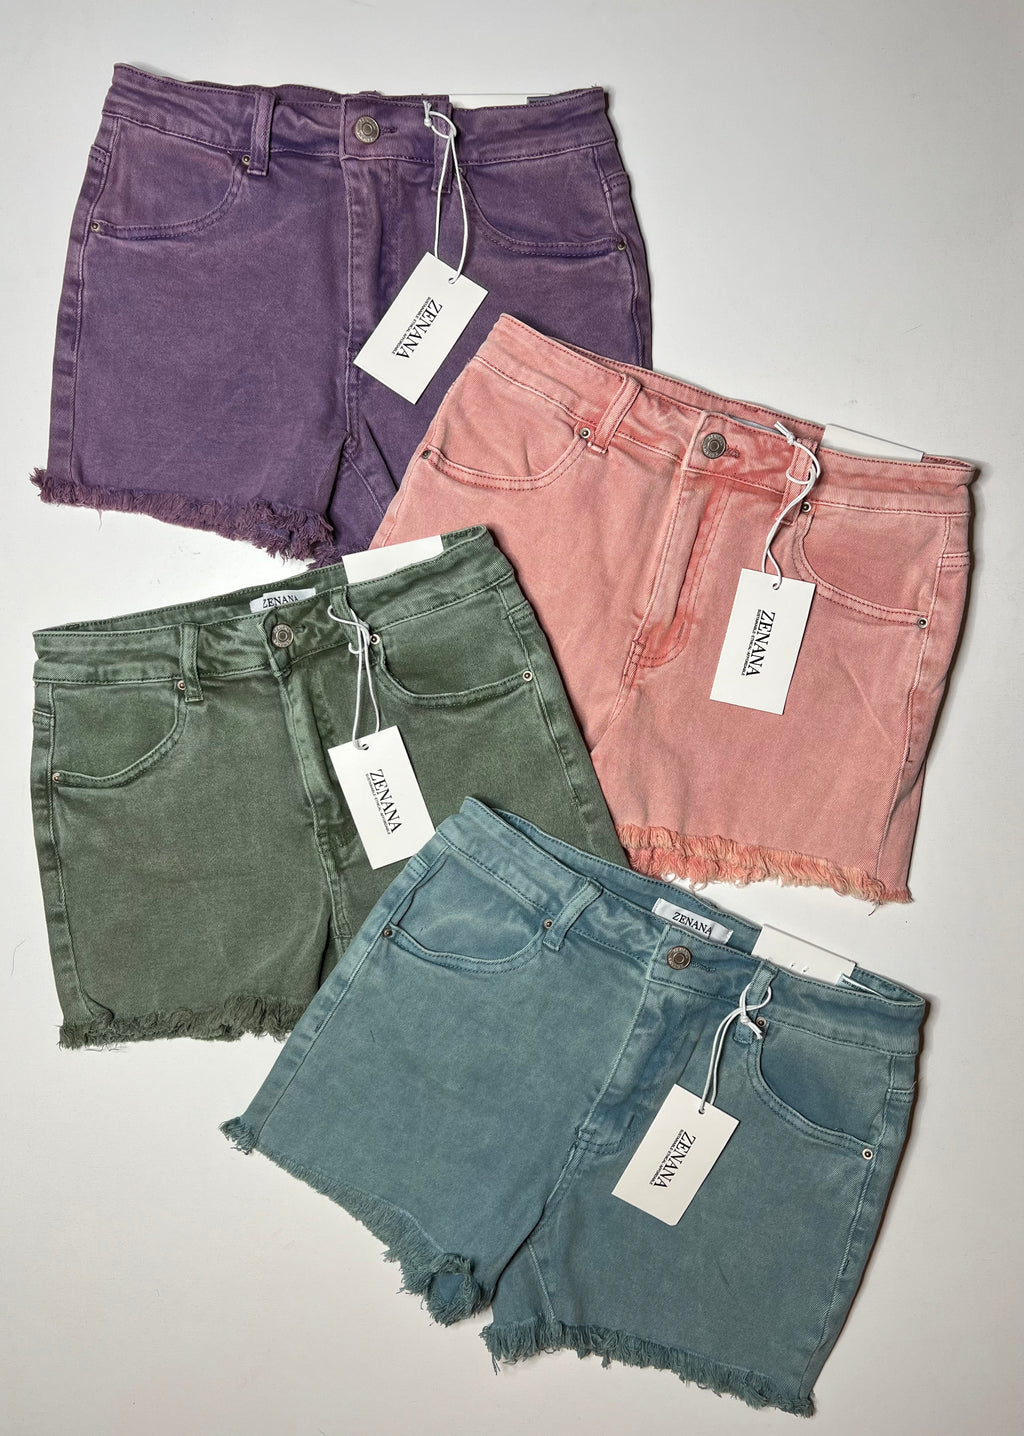 Zenana Acid Washed Frayed Hem Mid Rise Shorts - 4 colors